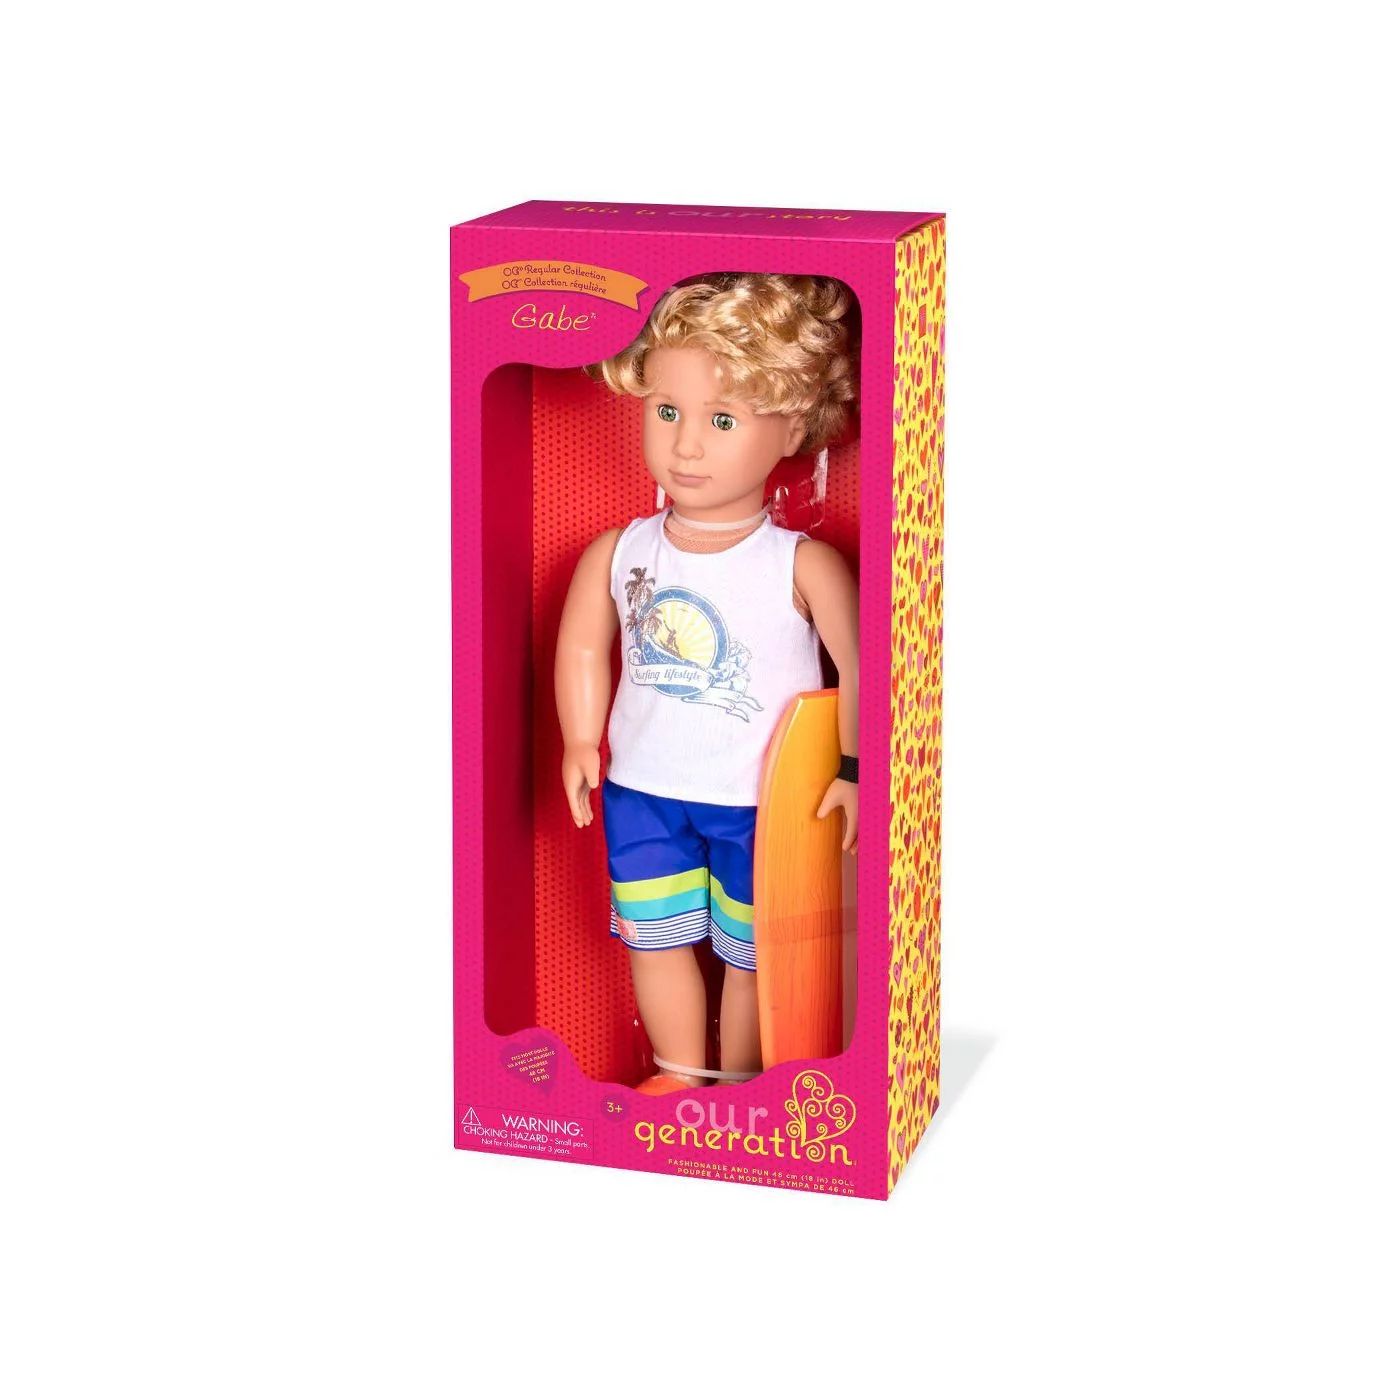 Our Generation Regular Surfer Boy Doll - Gabe | Walmart (US)